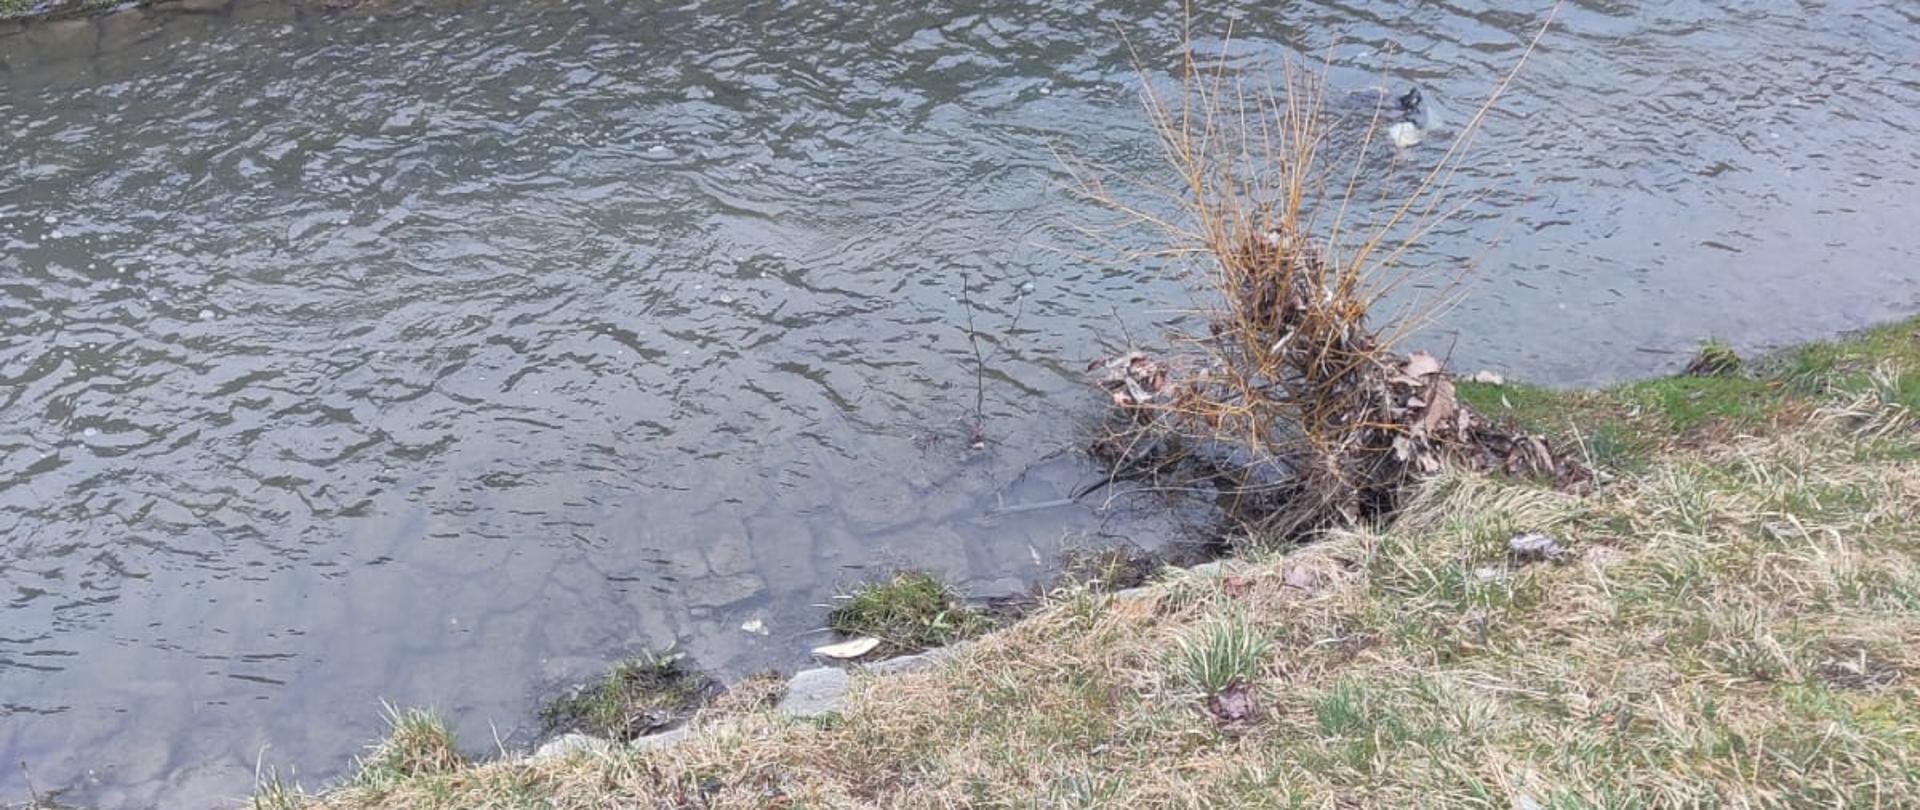 Zdjęcie przedstawia rzekę Silnicę, w której nurcie widać śniętą rybę.